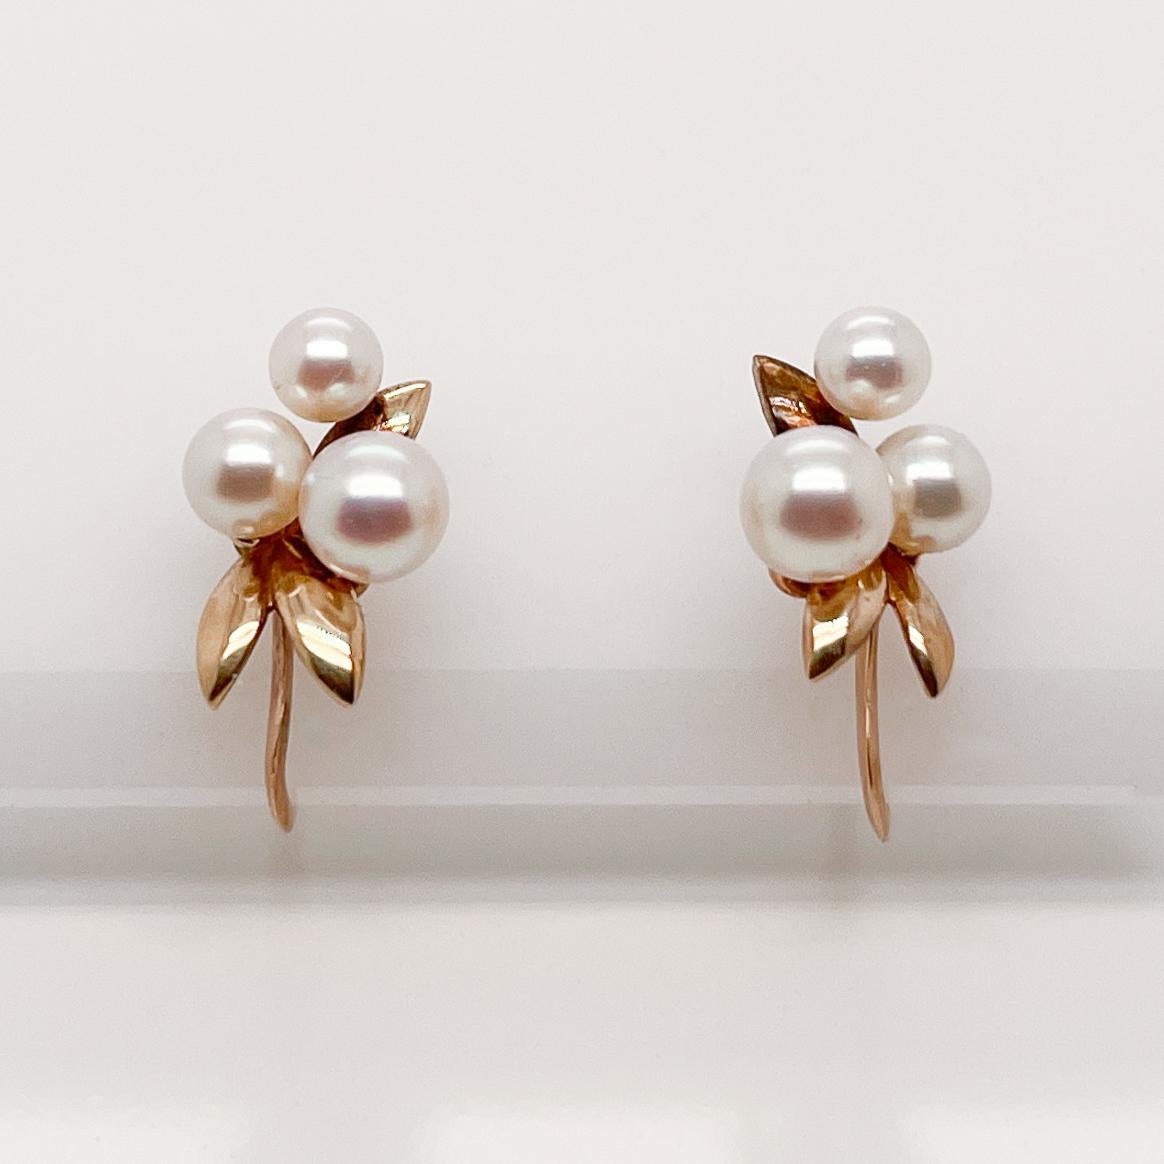 tasaki pearl earrings price